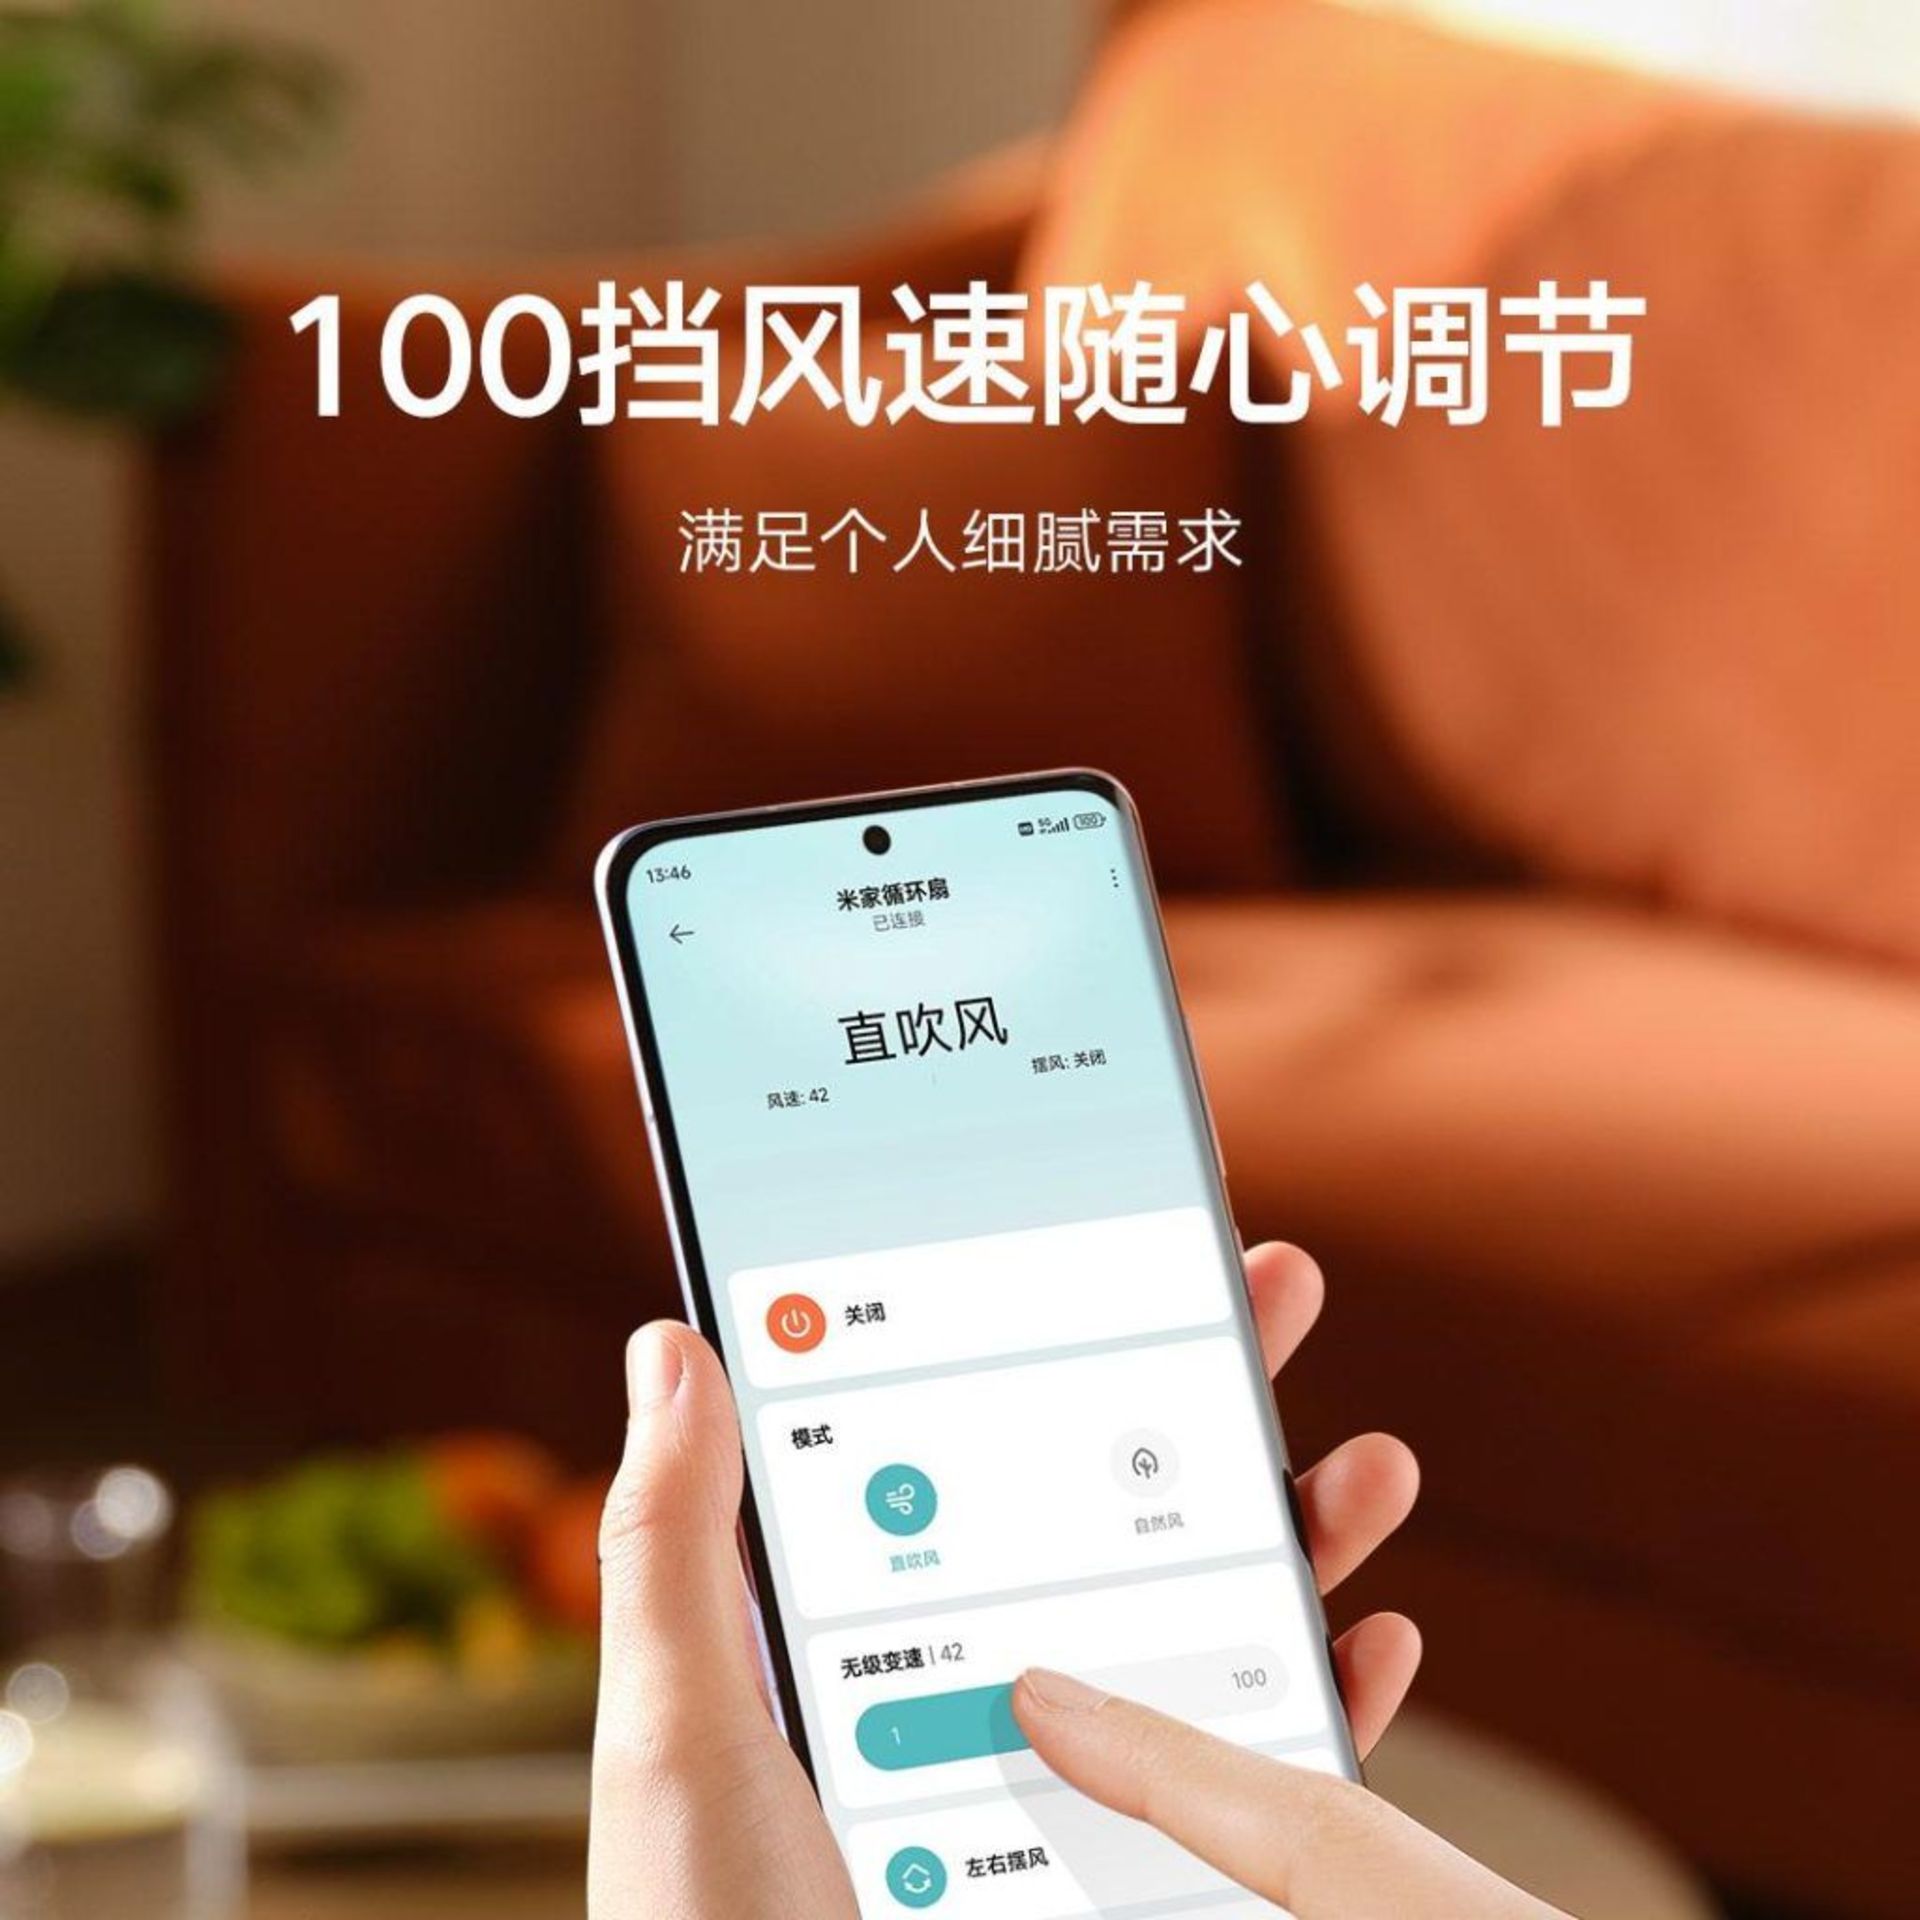 گوشی در دست در حال نمایش اپلیکیشن شیائومی برای کنترل پنکه هوشمند Mijia